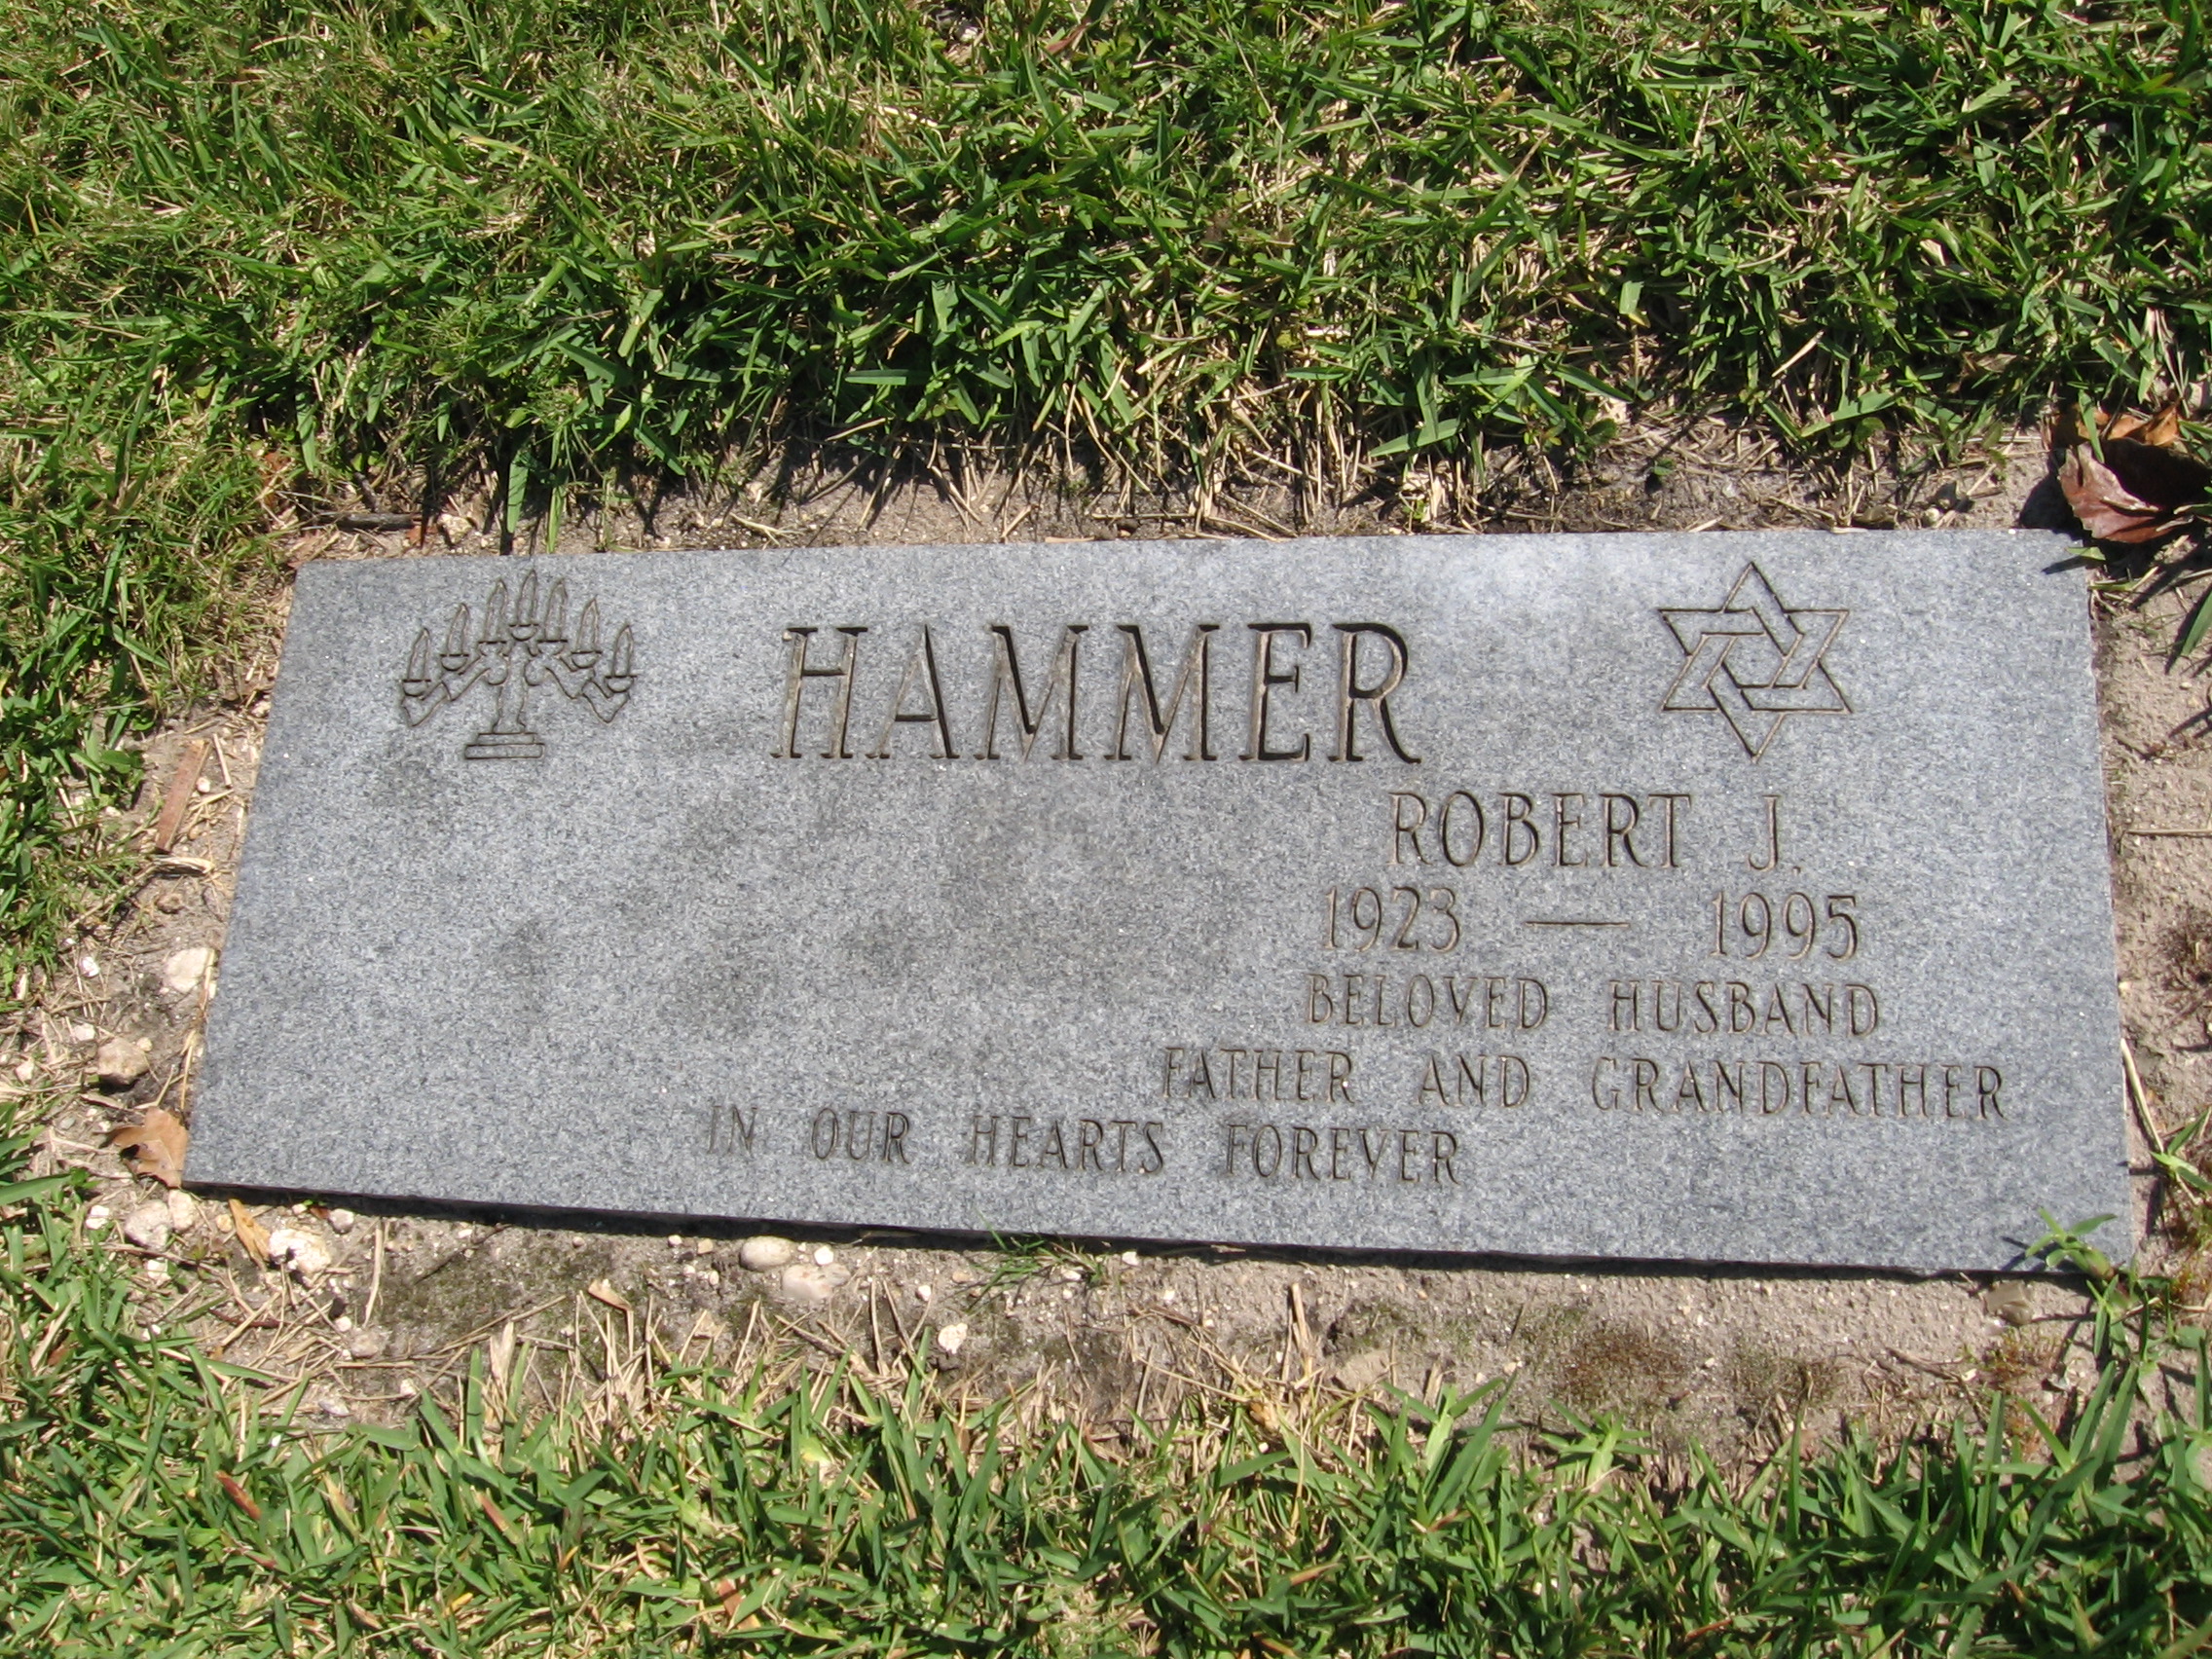 Robert J Hammer